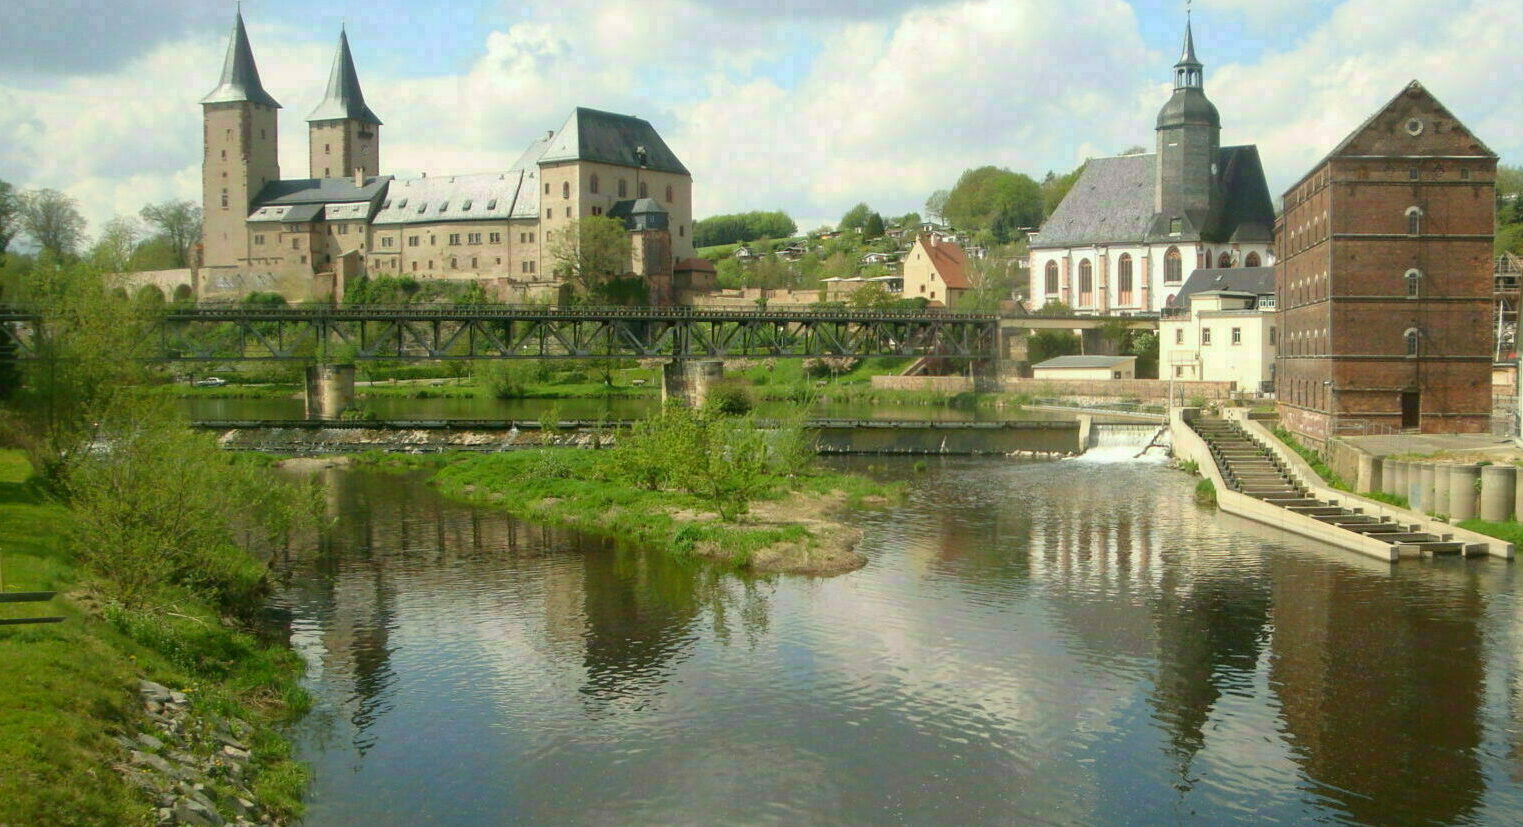 Blick auf Schloss Rochlitz